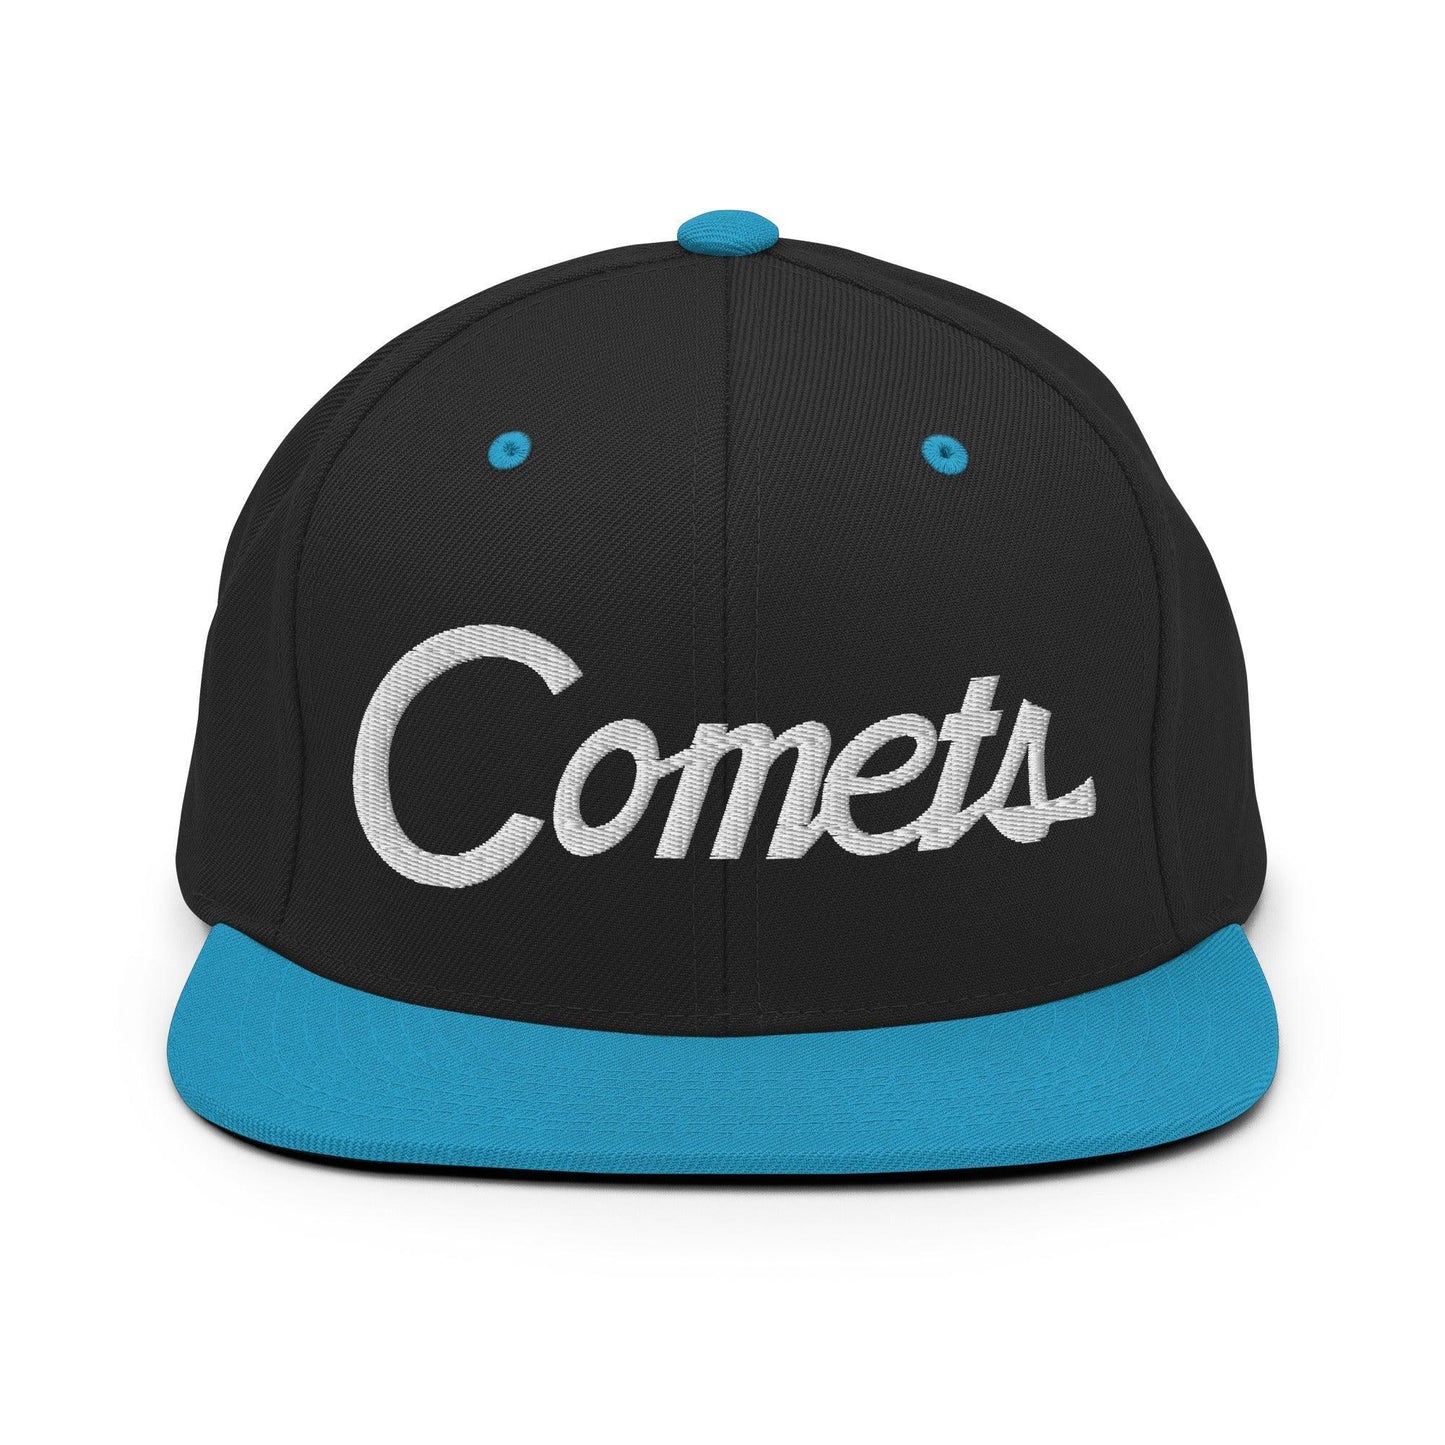 Comets School Mascot Script Snapback Hat Black/ Teal